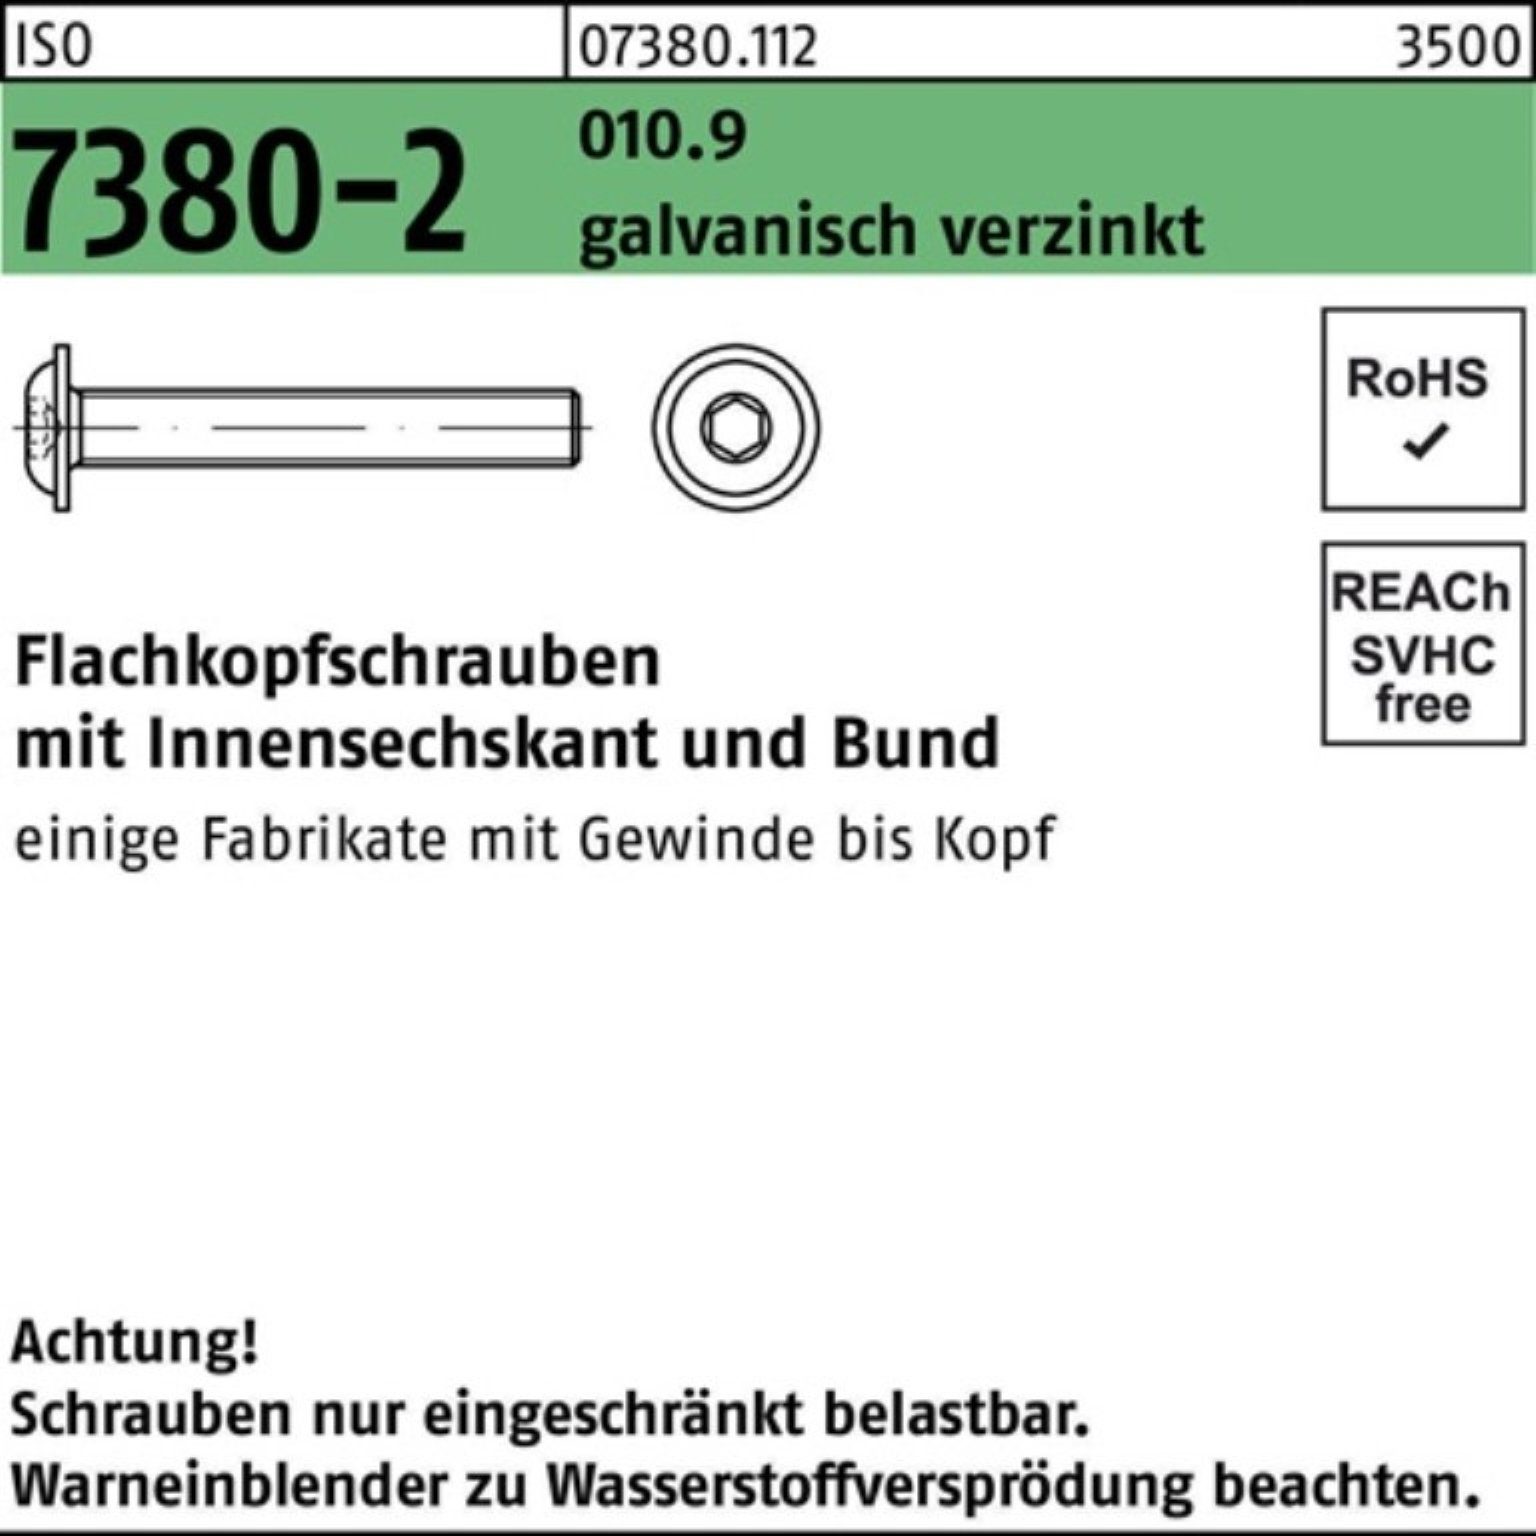 Reyher Schraube 100er Pack Flachkopfschraube ISO 7380-2 Bund/Innen-6kt M10x50 010.9 ga